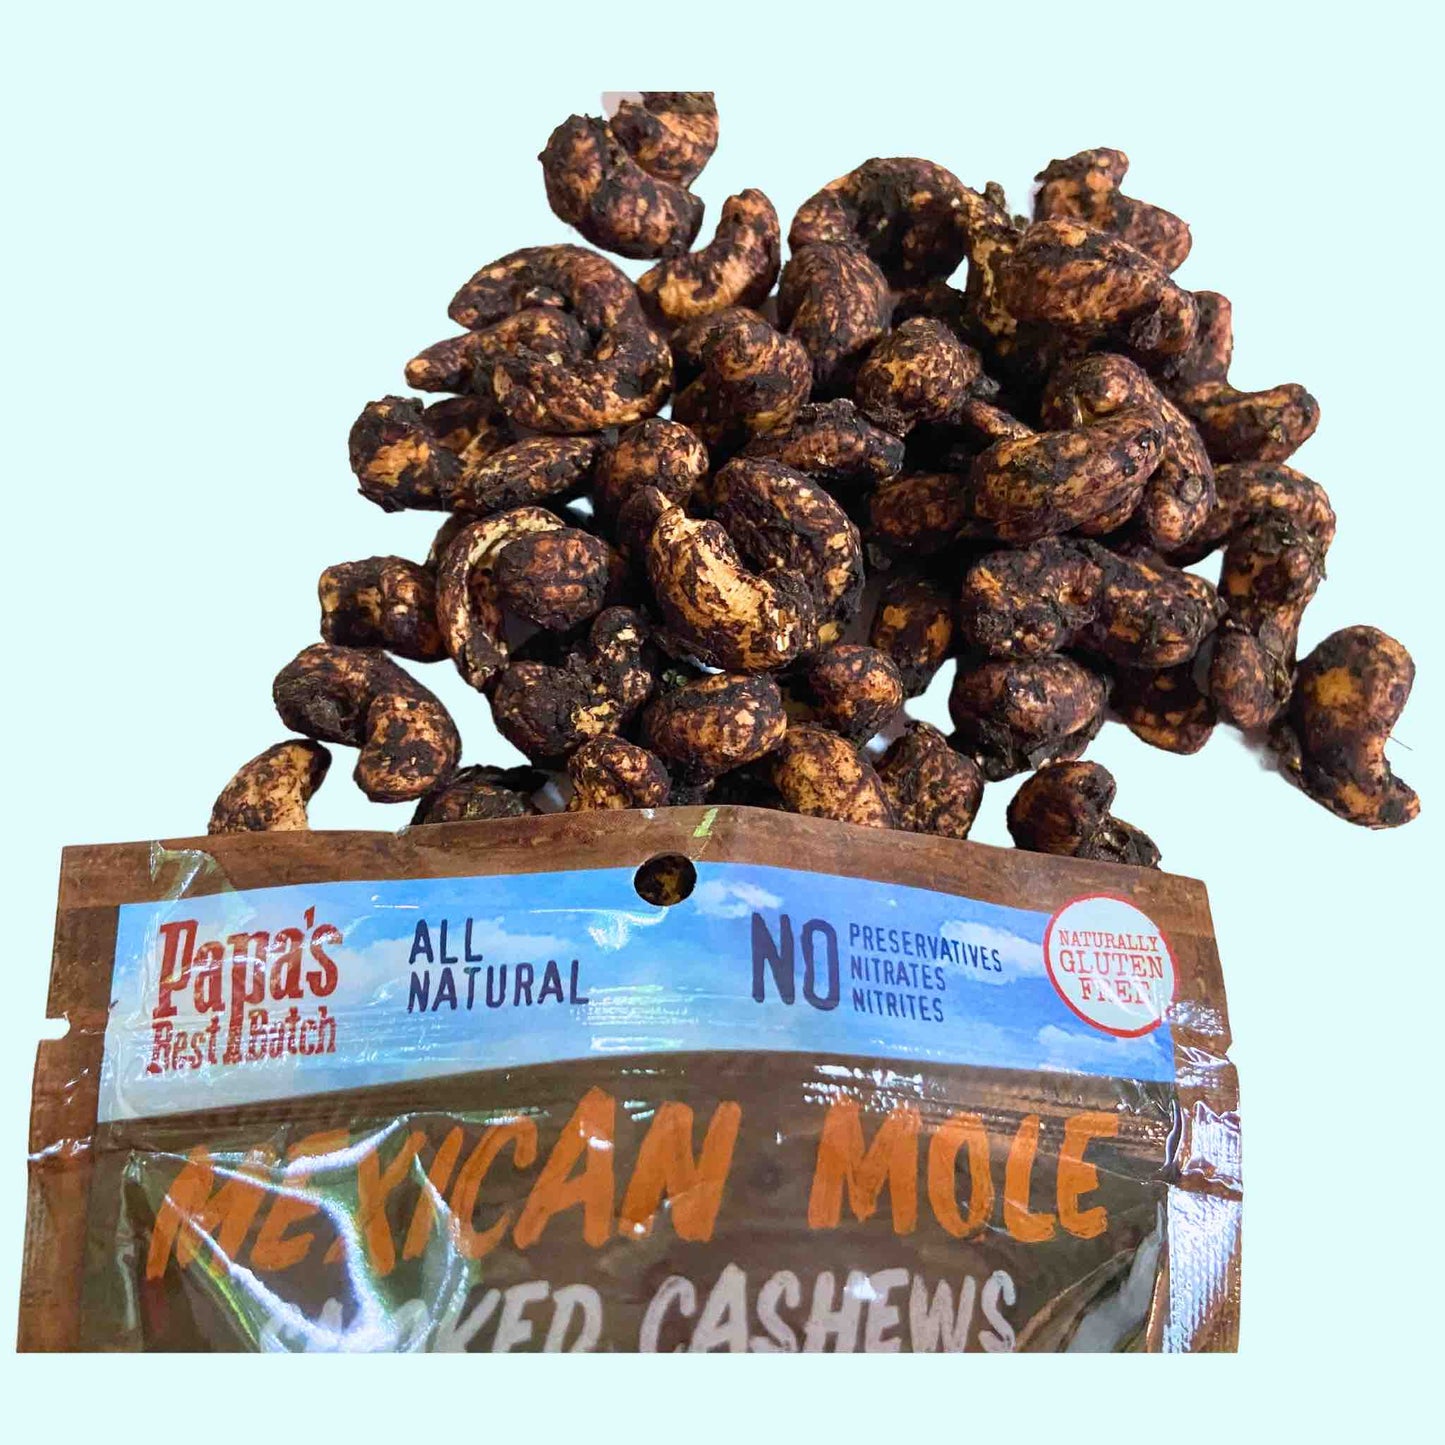 Smoked Cashews Nut Sack